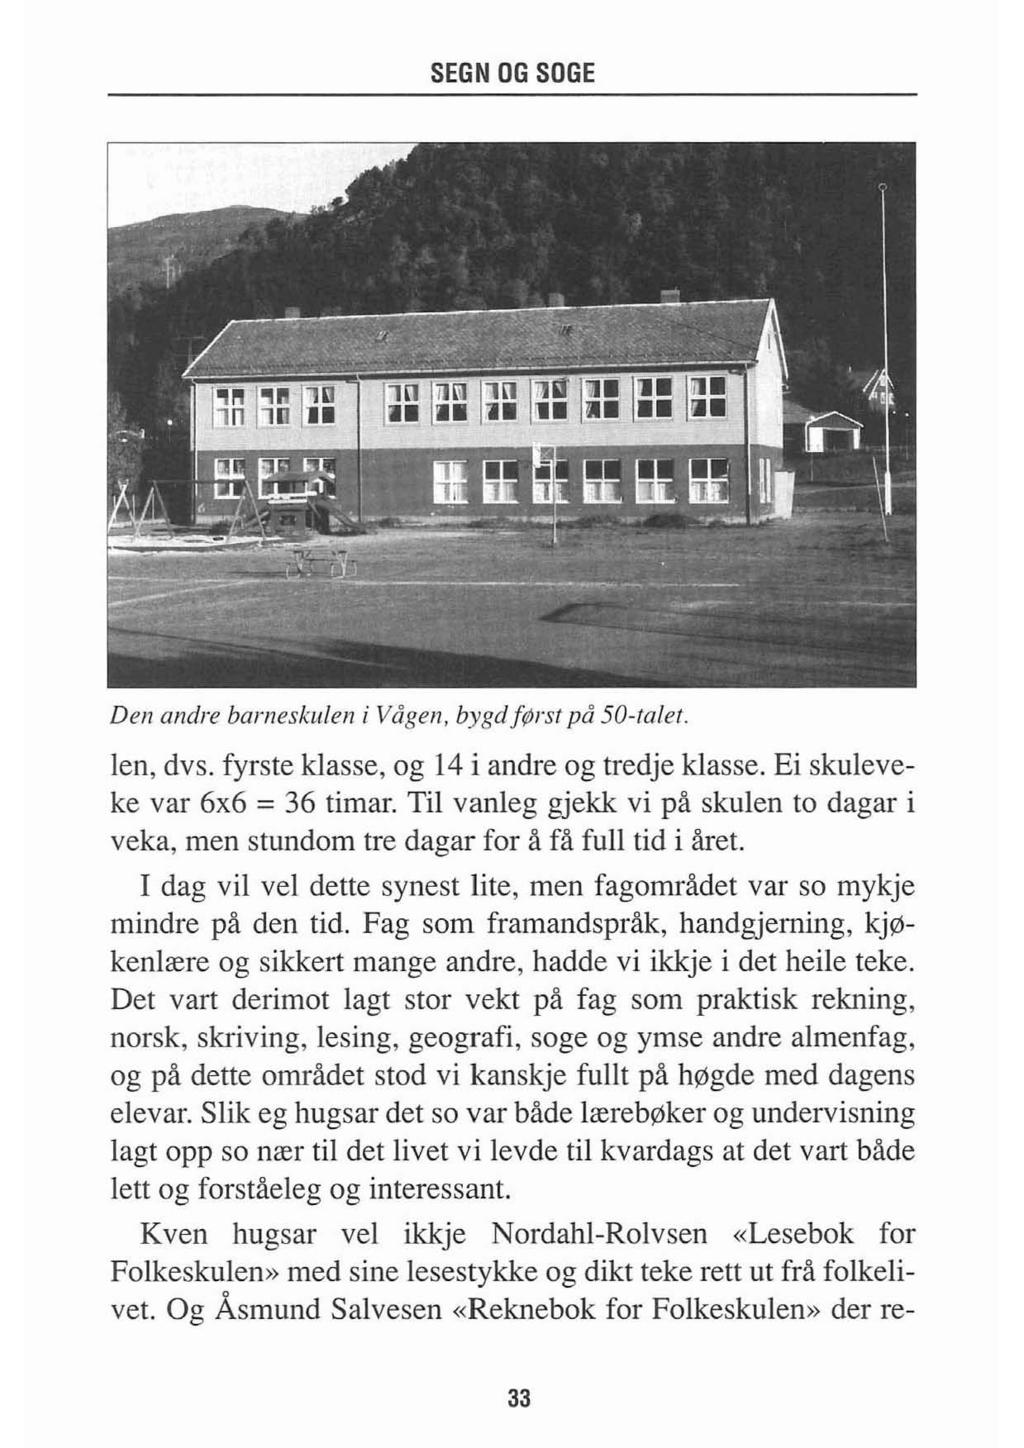 Den andre barneskulen i Vågen, bygdførst på 50-talet. len, dvs. fyrste klasse, og 14 i andre og tredje klasse. Ei skuleveke var 6x6 = 36 timar.